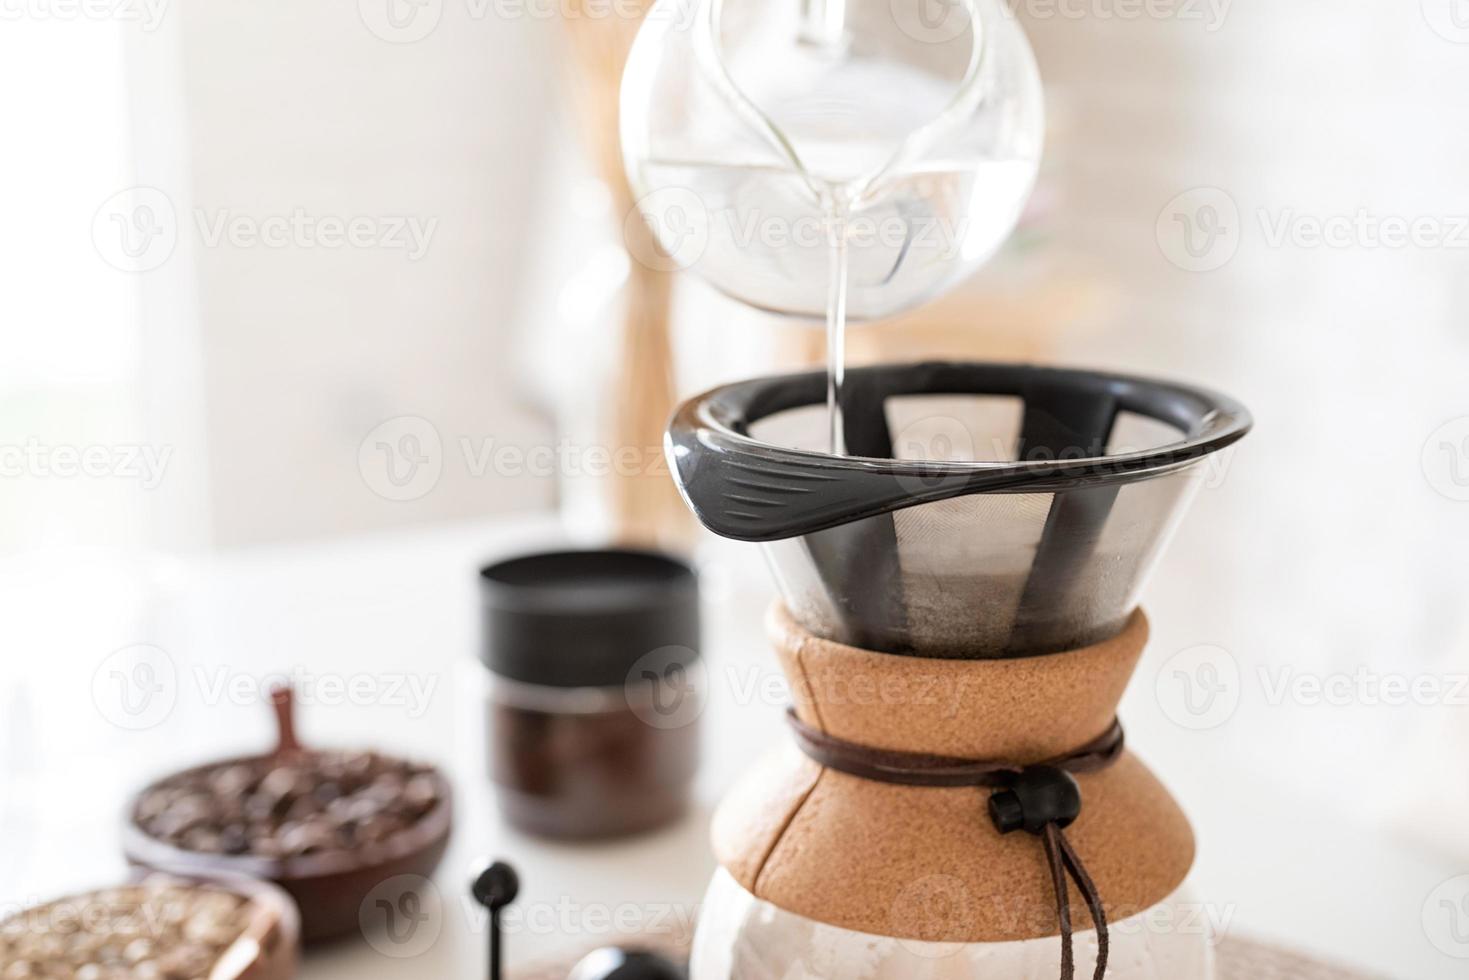 donna che prepara il caffè nella caffettiera, versando acqua calda nel filtro foto